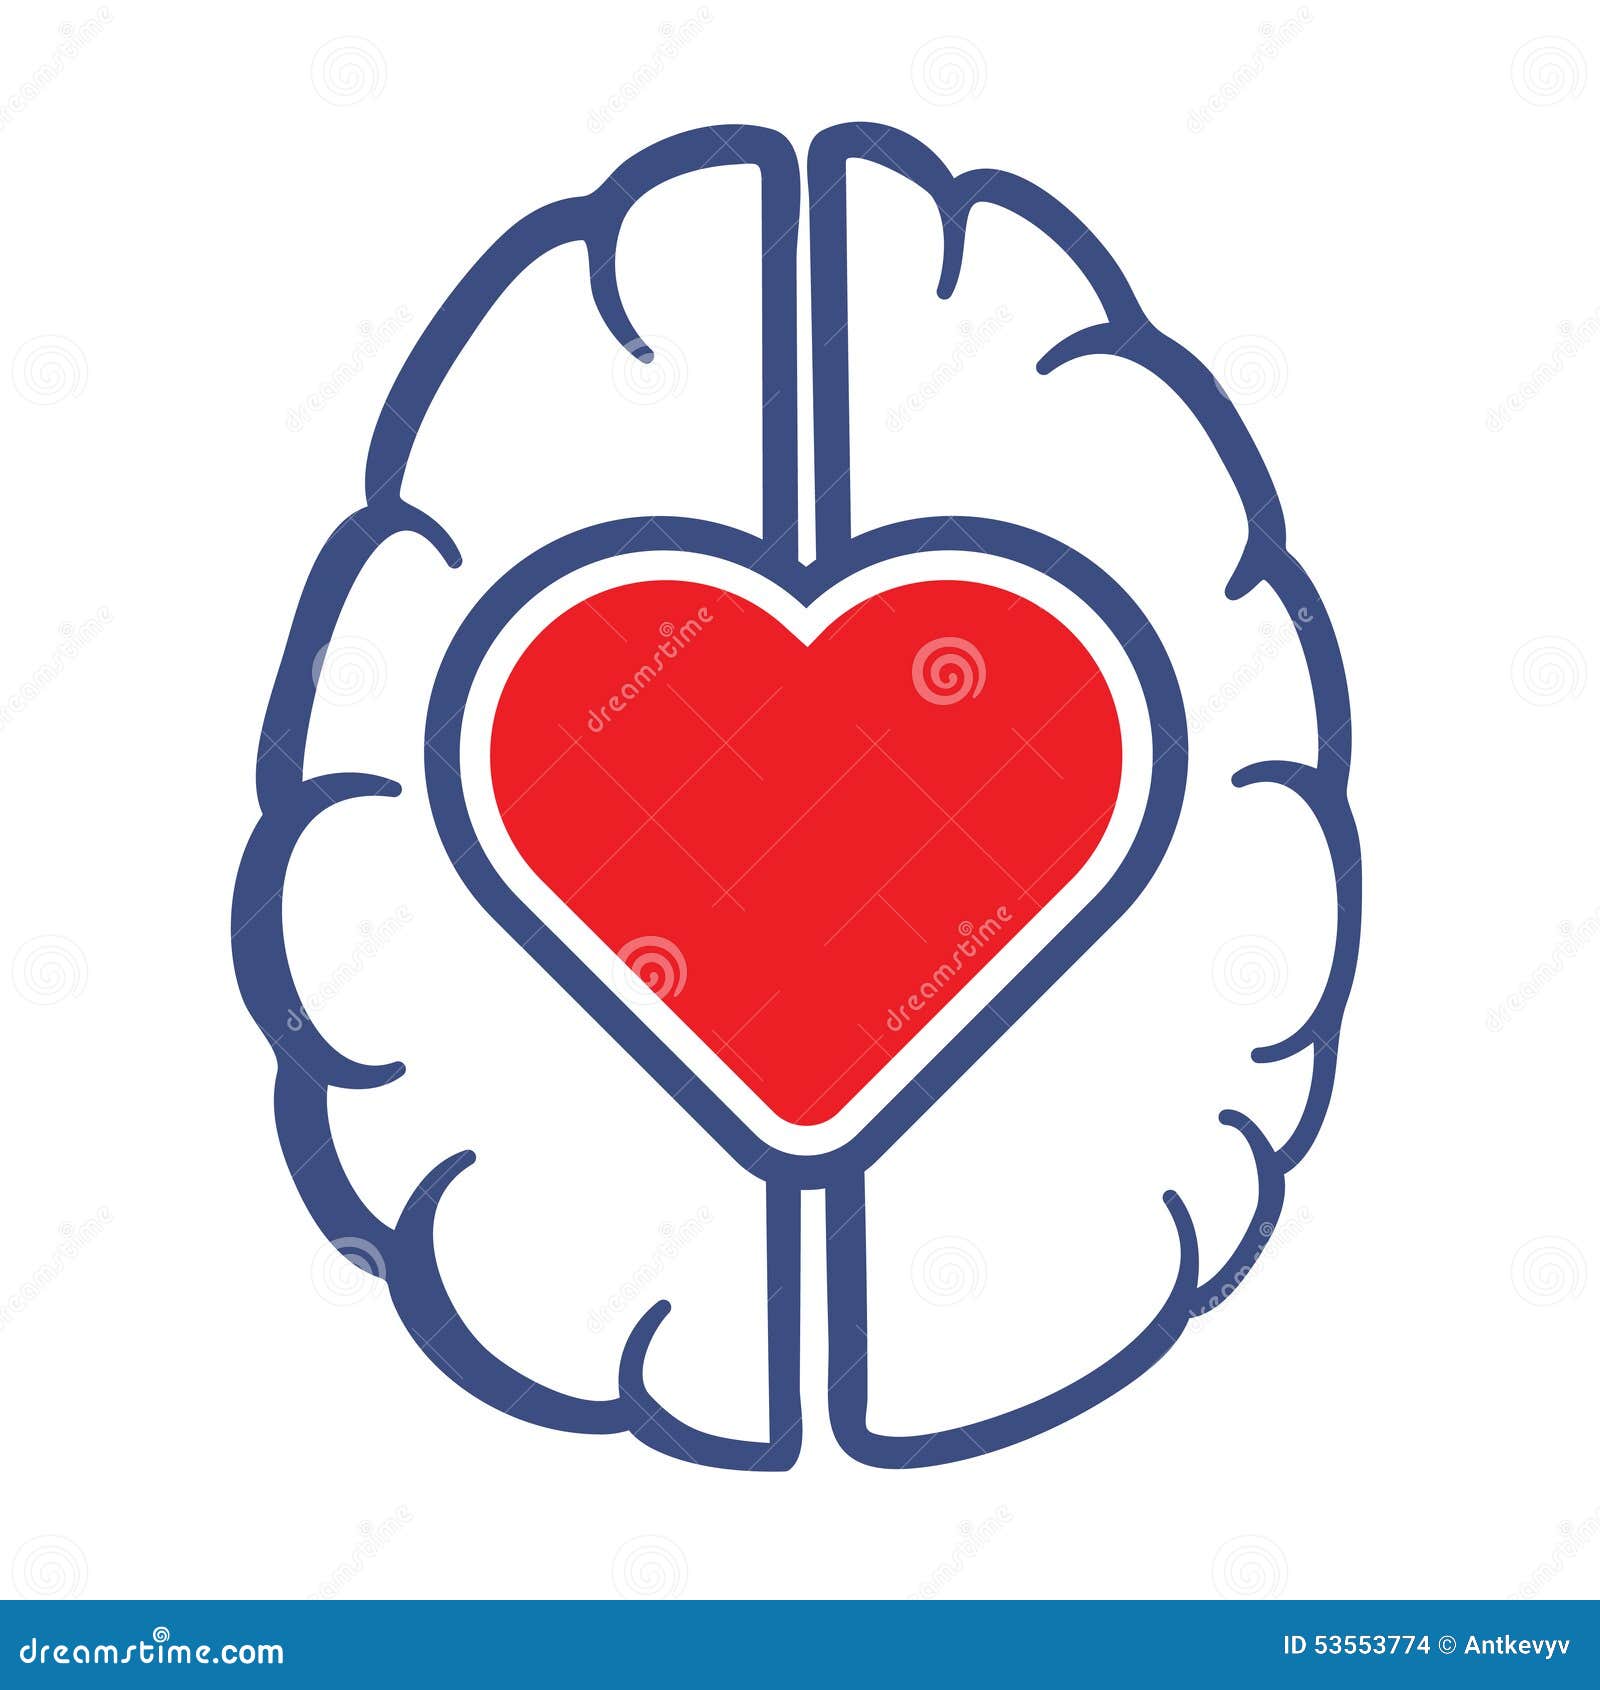 free clipart heart brain - photo #19